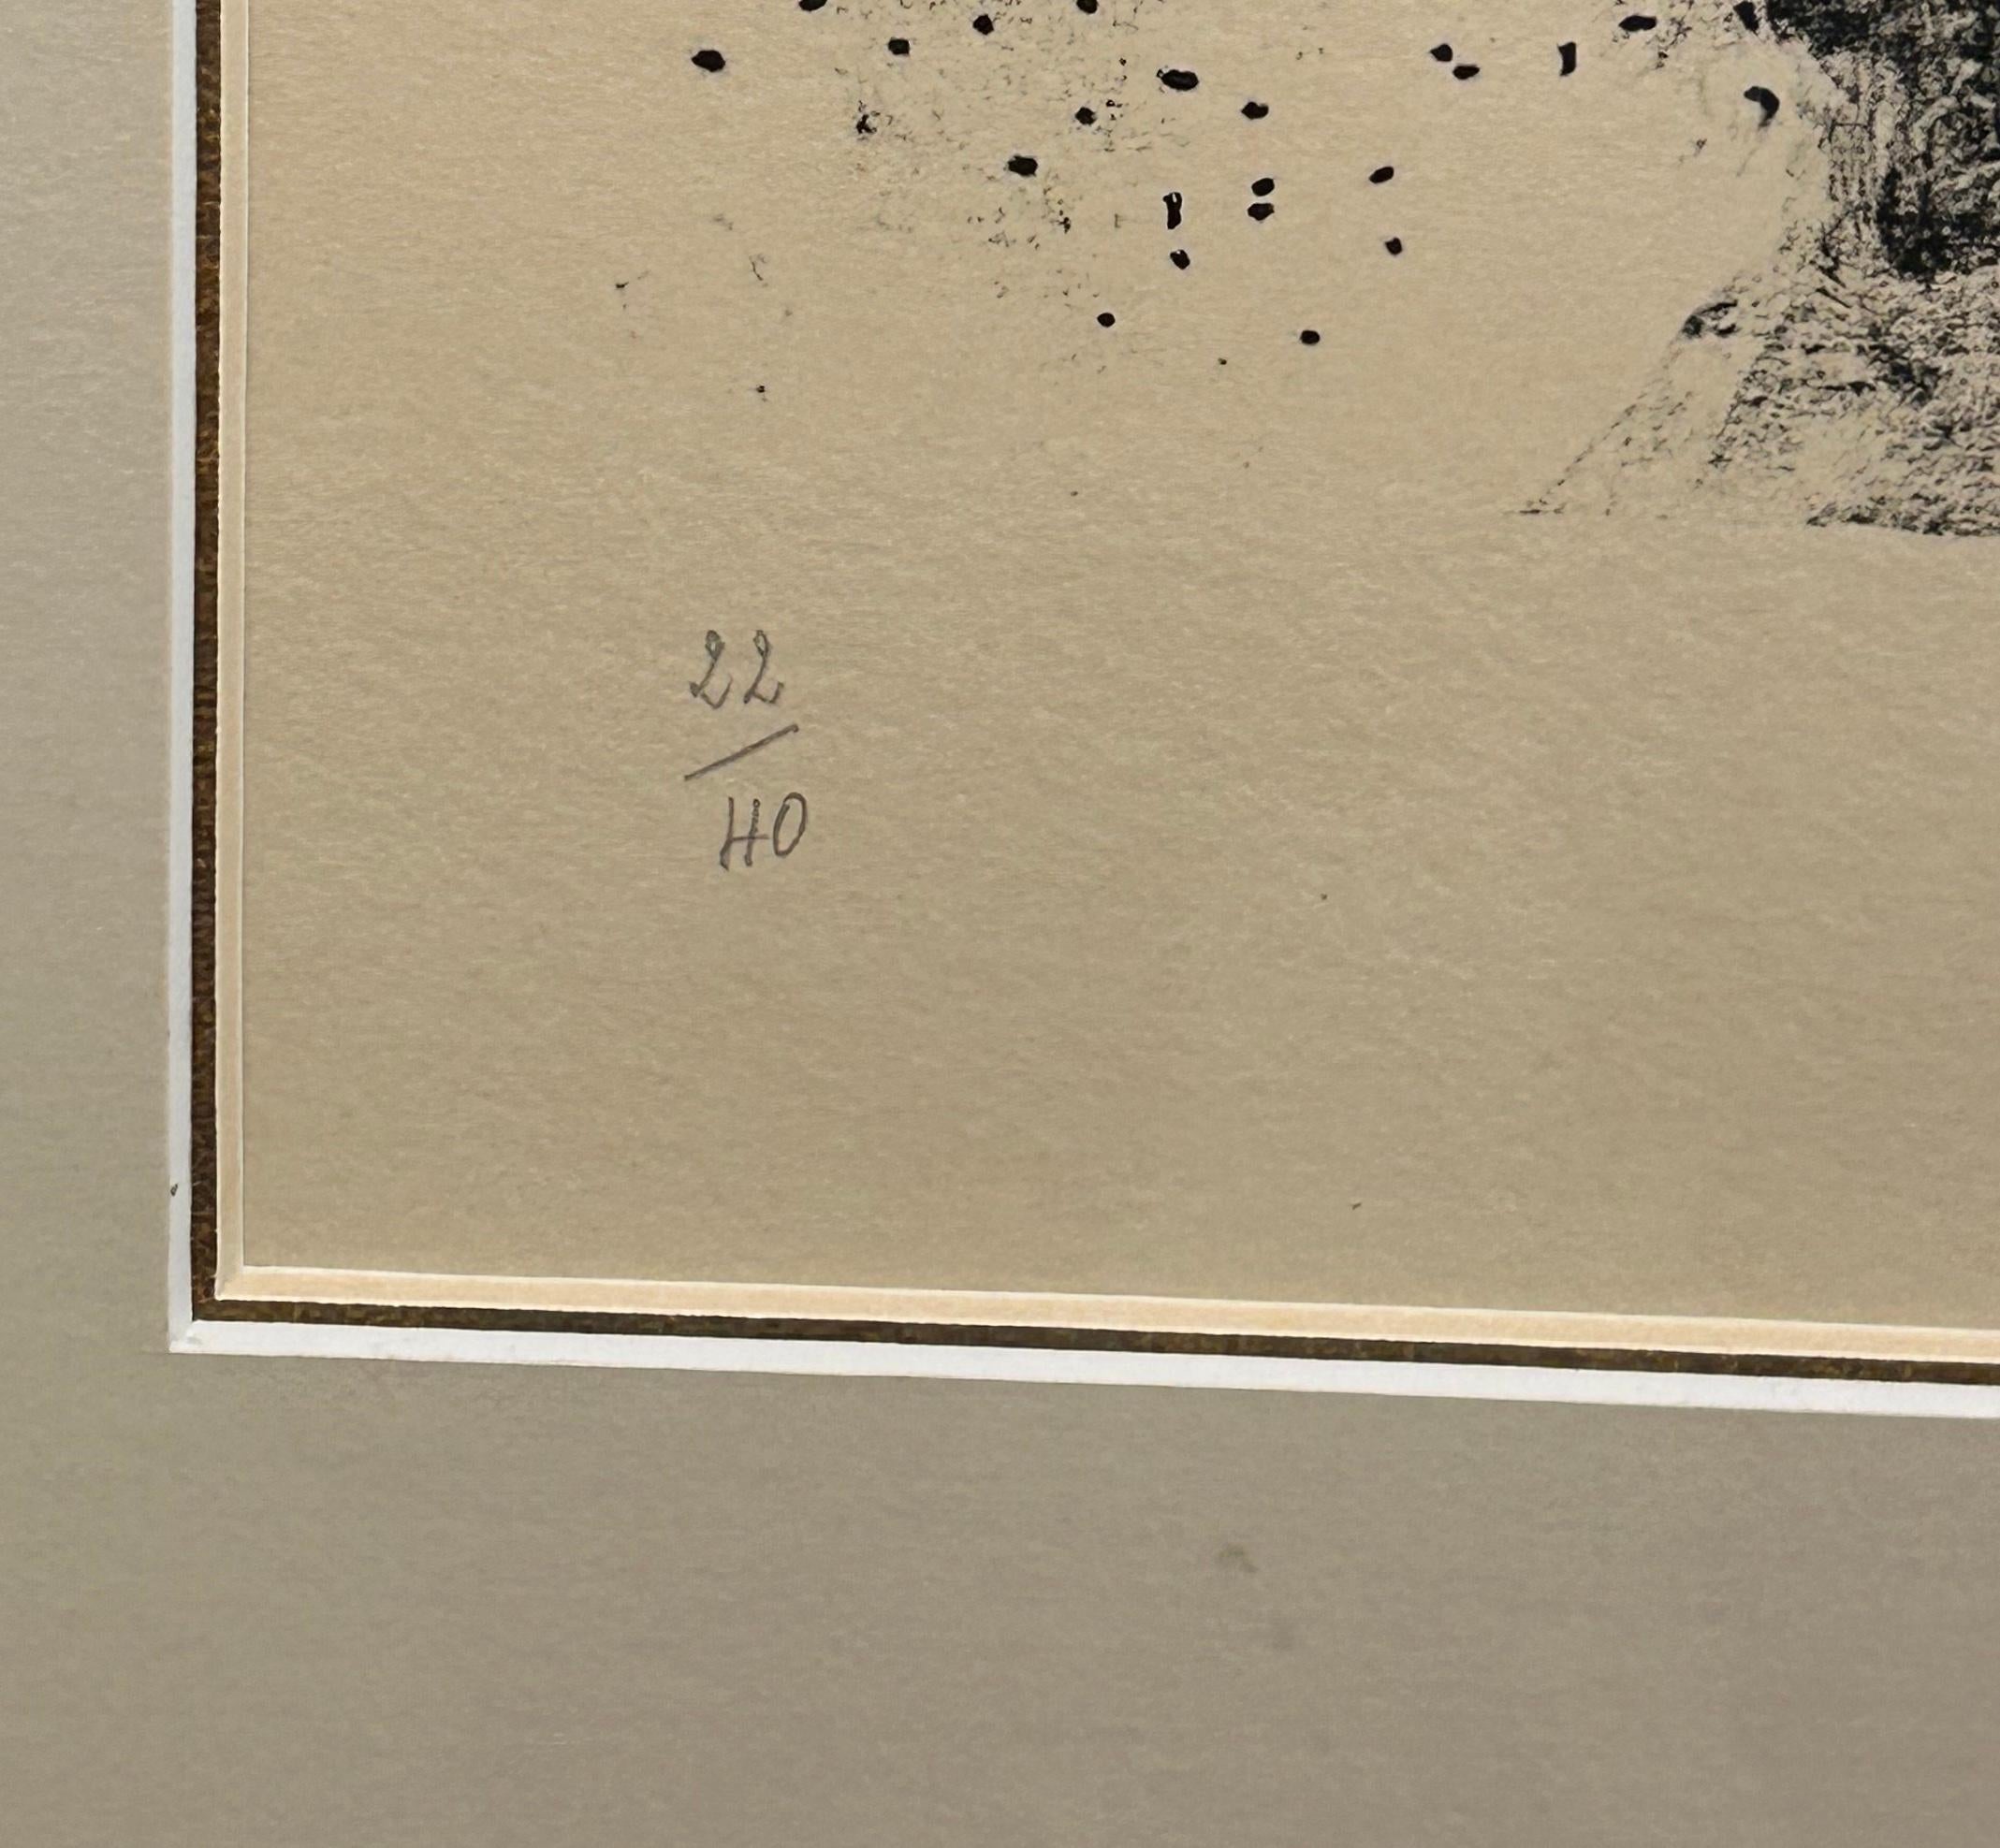 Couple a l'Oiseau. Lithographie en noir et blanc sur papier Arches créée en 1959 par Marc Chagall, imprimée par Mourlot à Paris. Signé et numéroté au crayon par l'artiste, édition 22/40. L'image représente une femme avec un homme derrière elle, sur